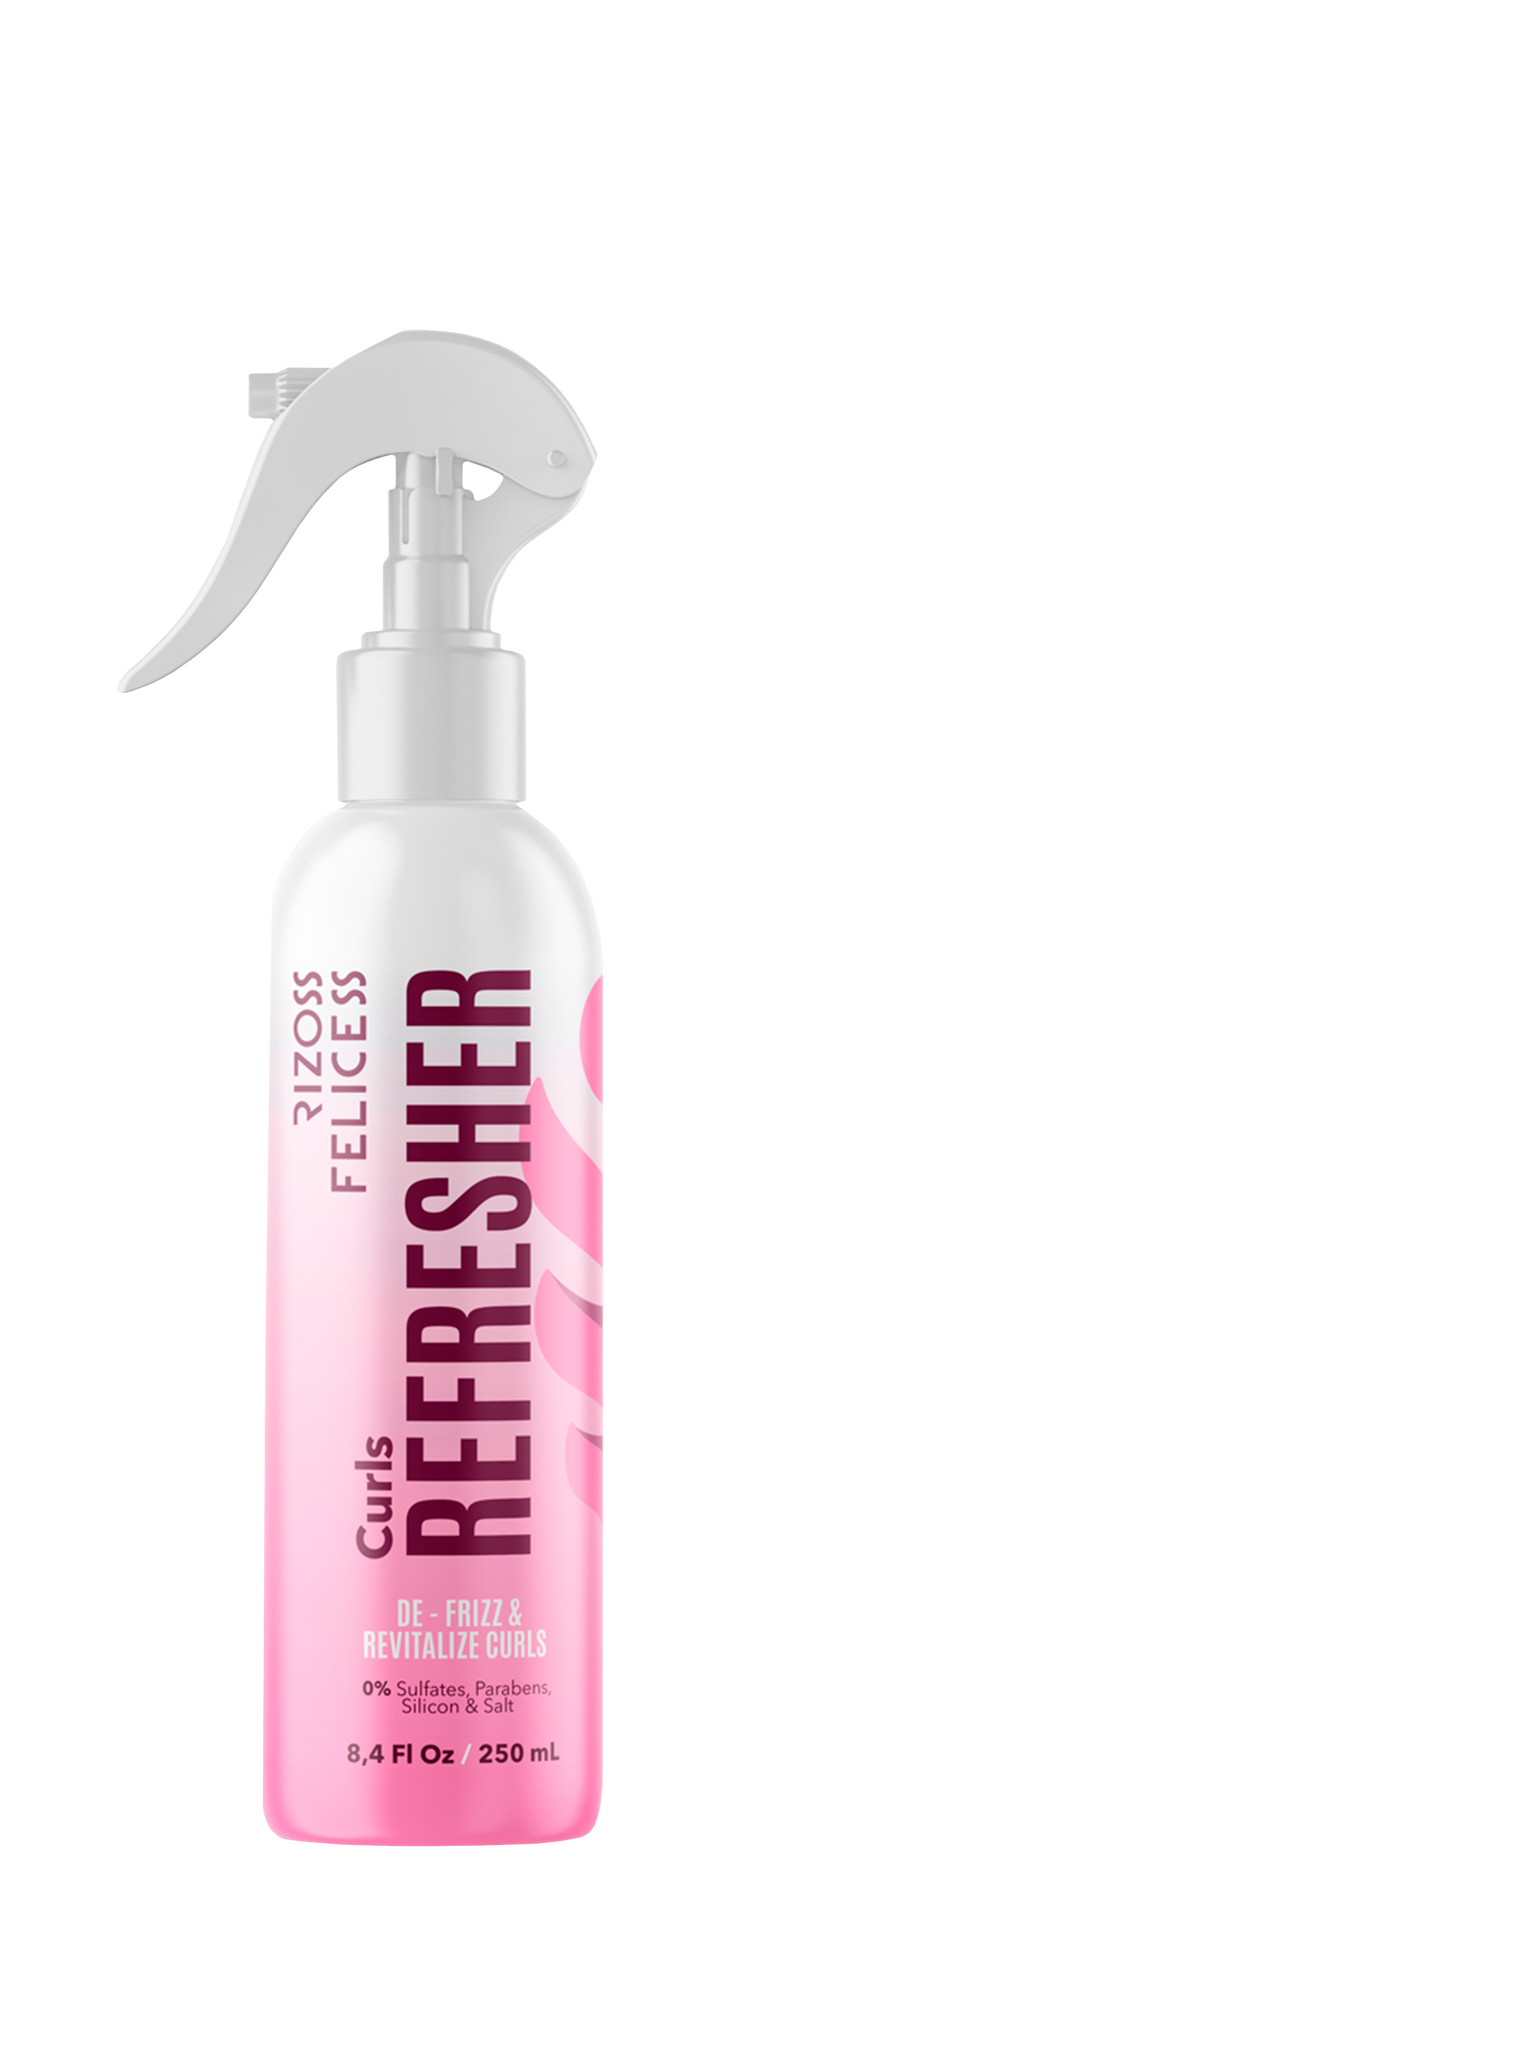 Refresh Curls 250ml Rizos Felices Ideal para revivir los rizos después de una definición. Este producto es un complemento para tu rutina, especialmente para los días que no laves tu cabello y sientes que hay rizos que se han ido desarmando. 